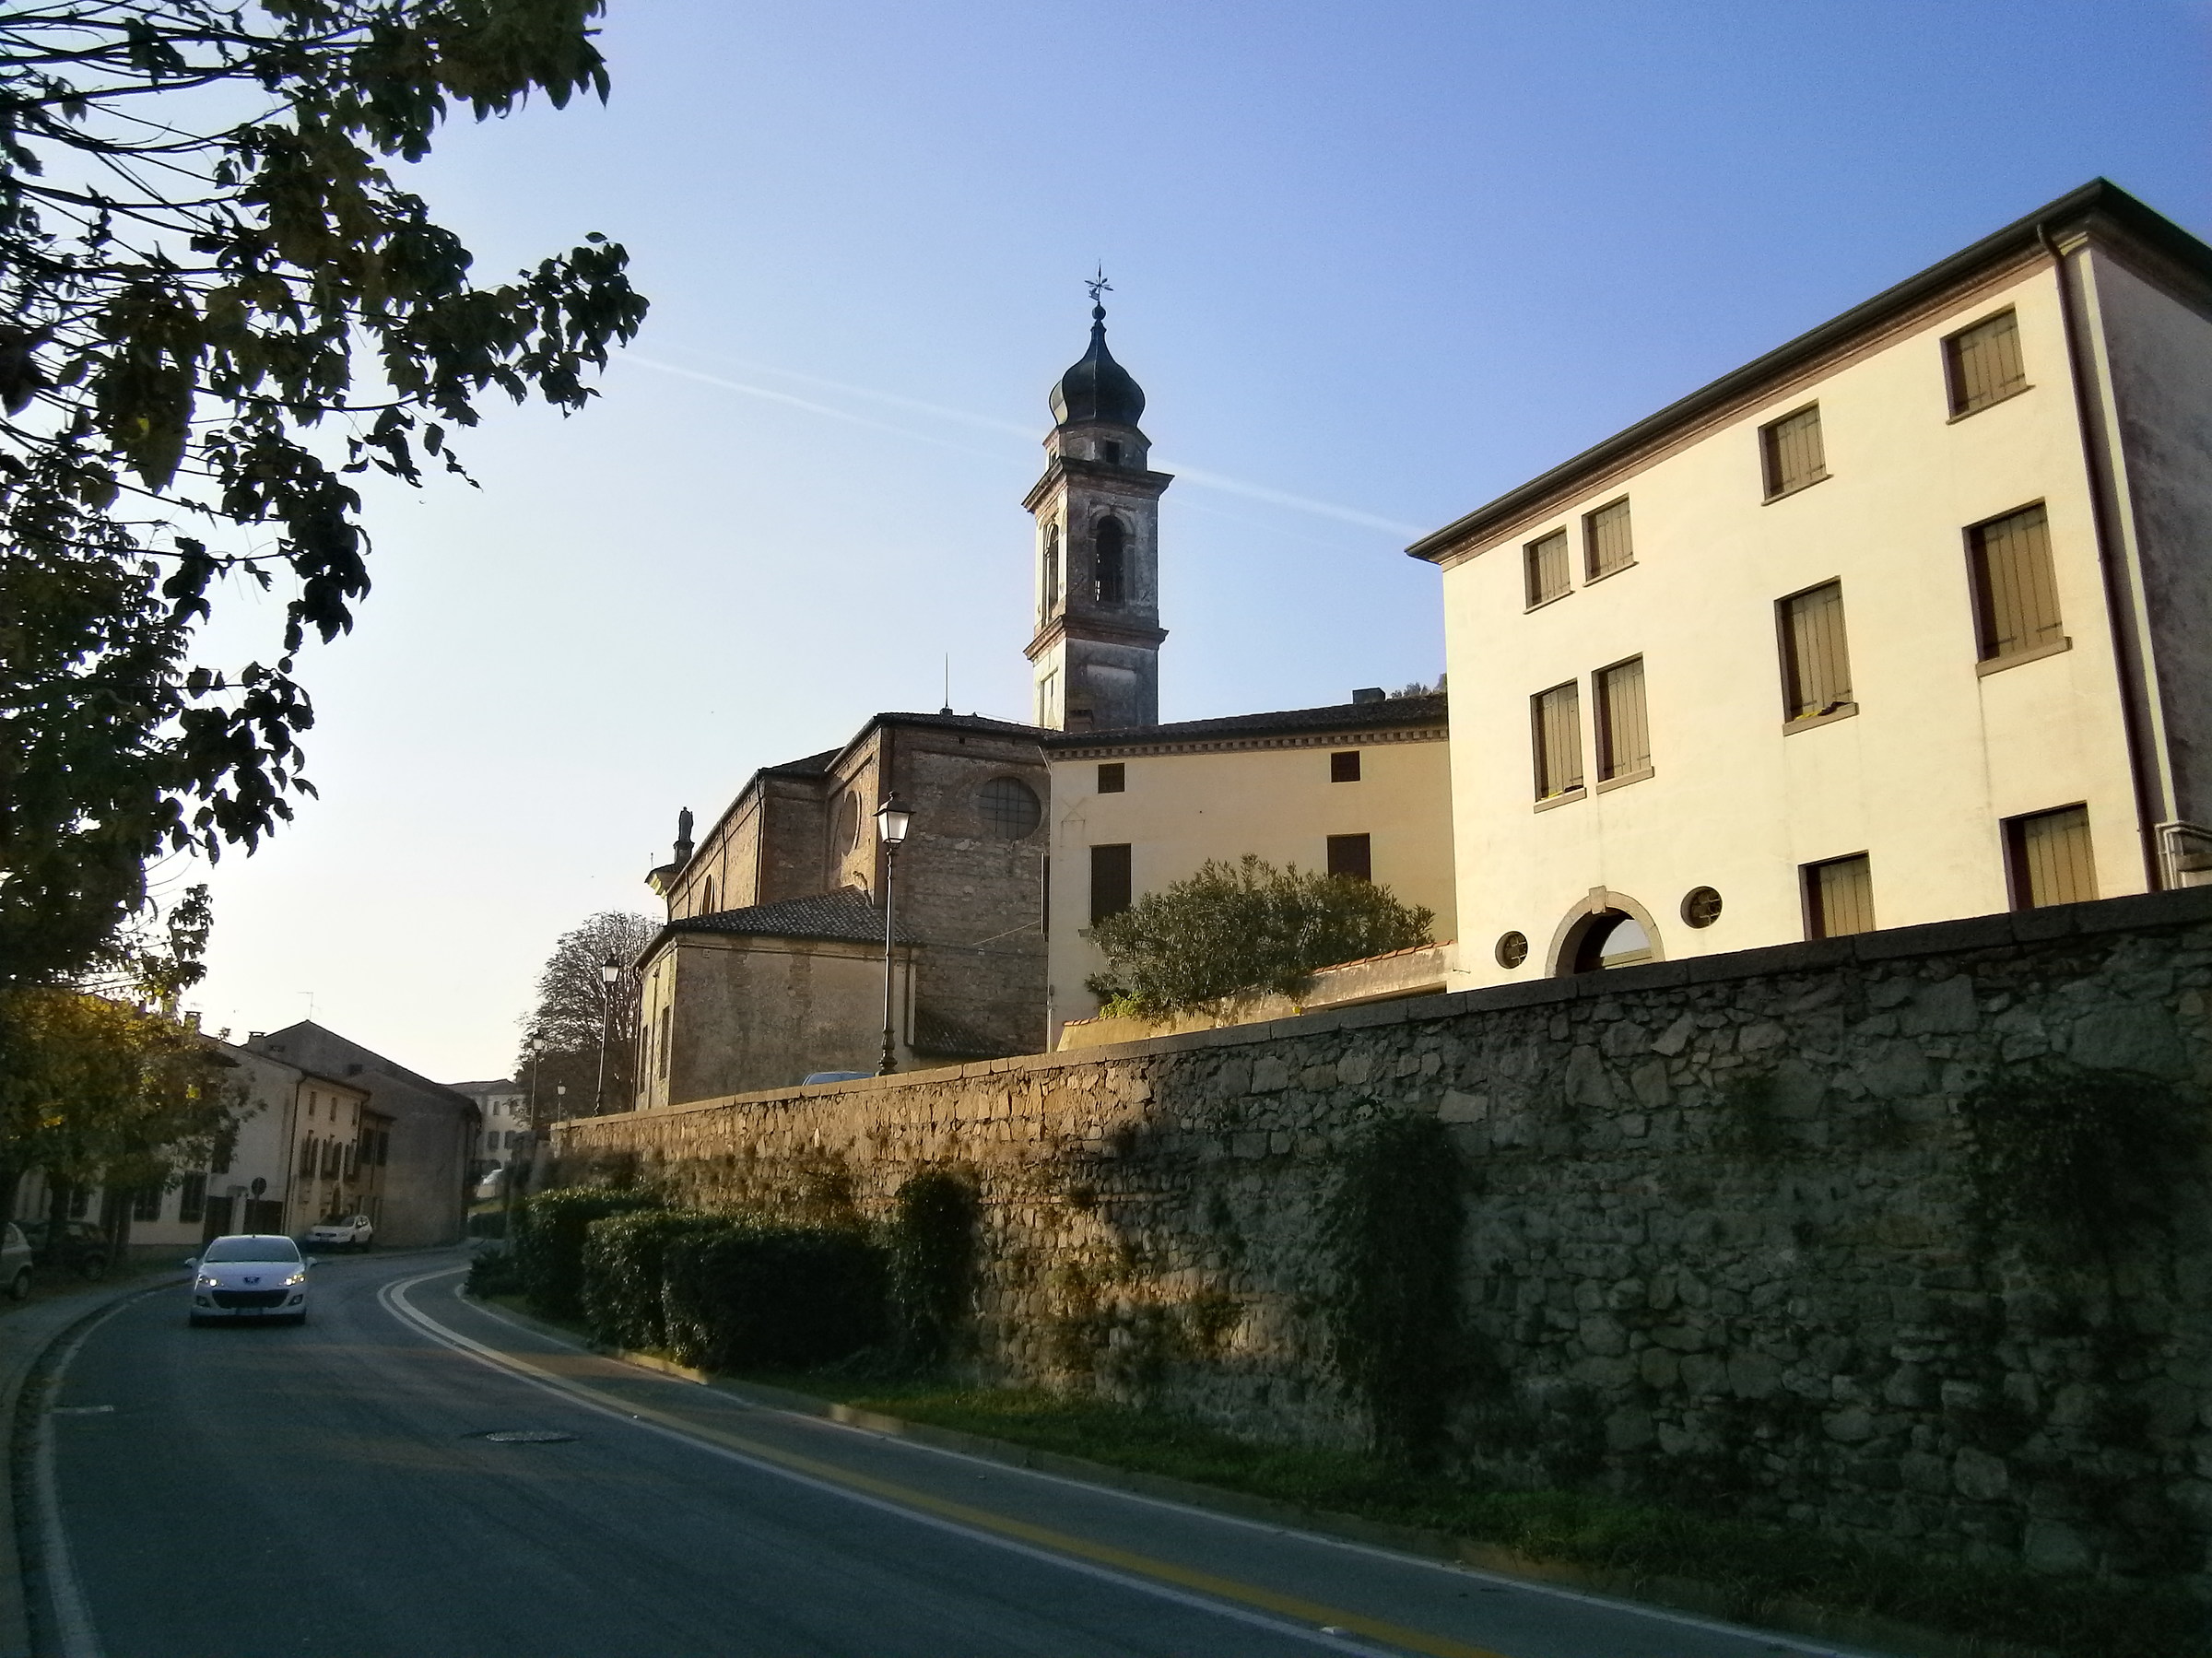 Monselice (Pd): Via Tassello con chiesa di San Martino...